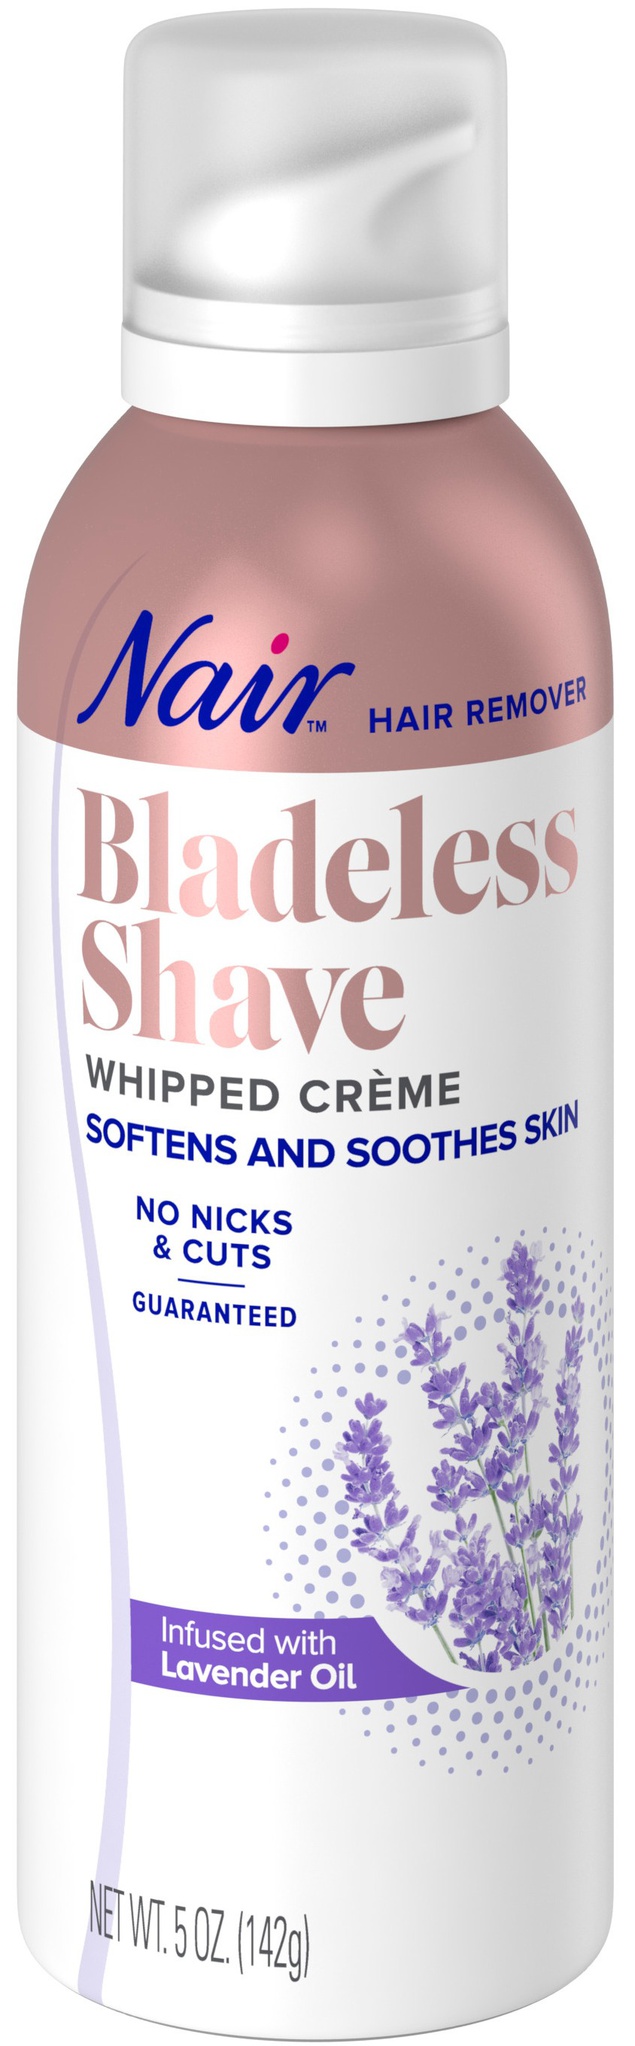 Nair Blade Less Shave